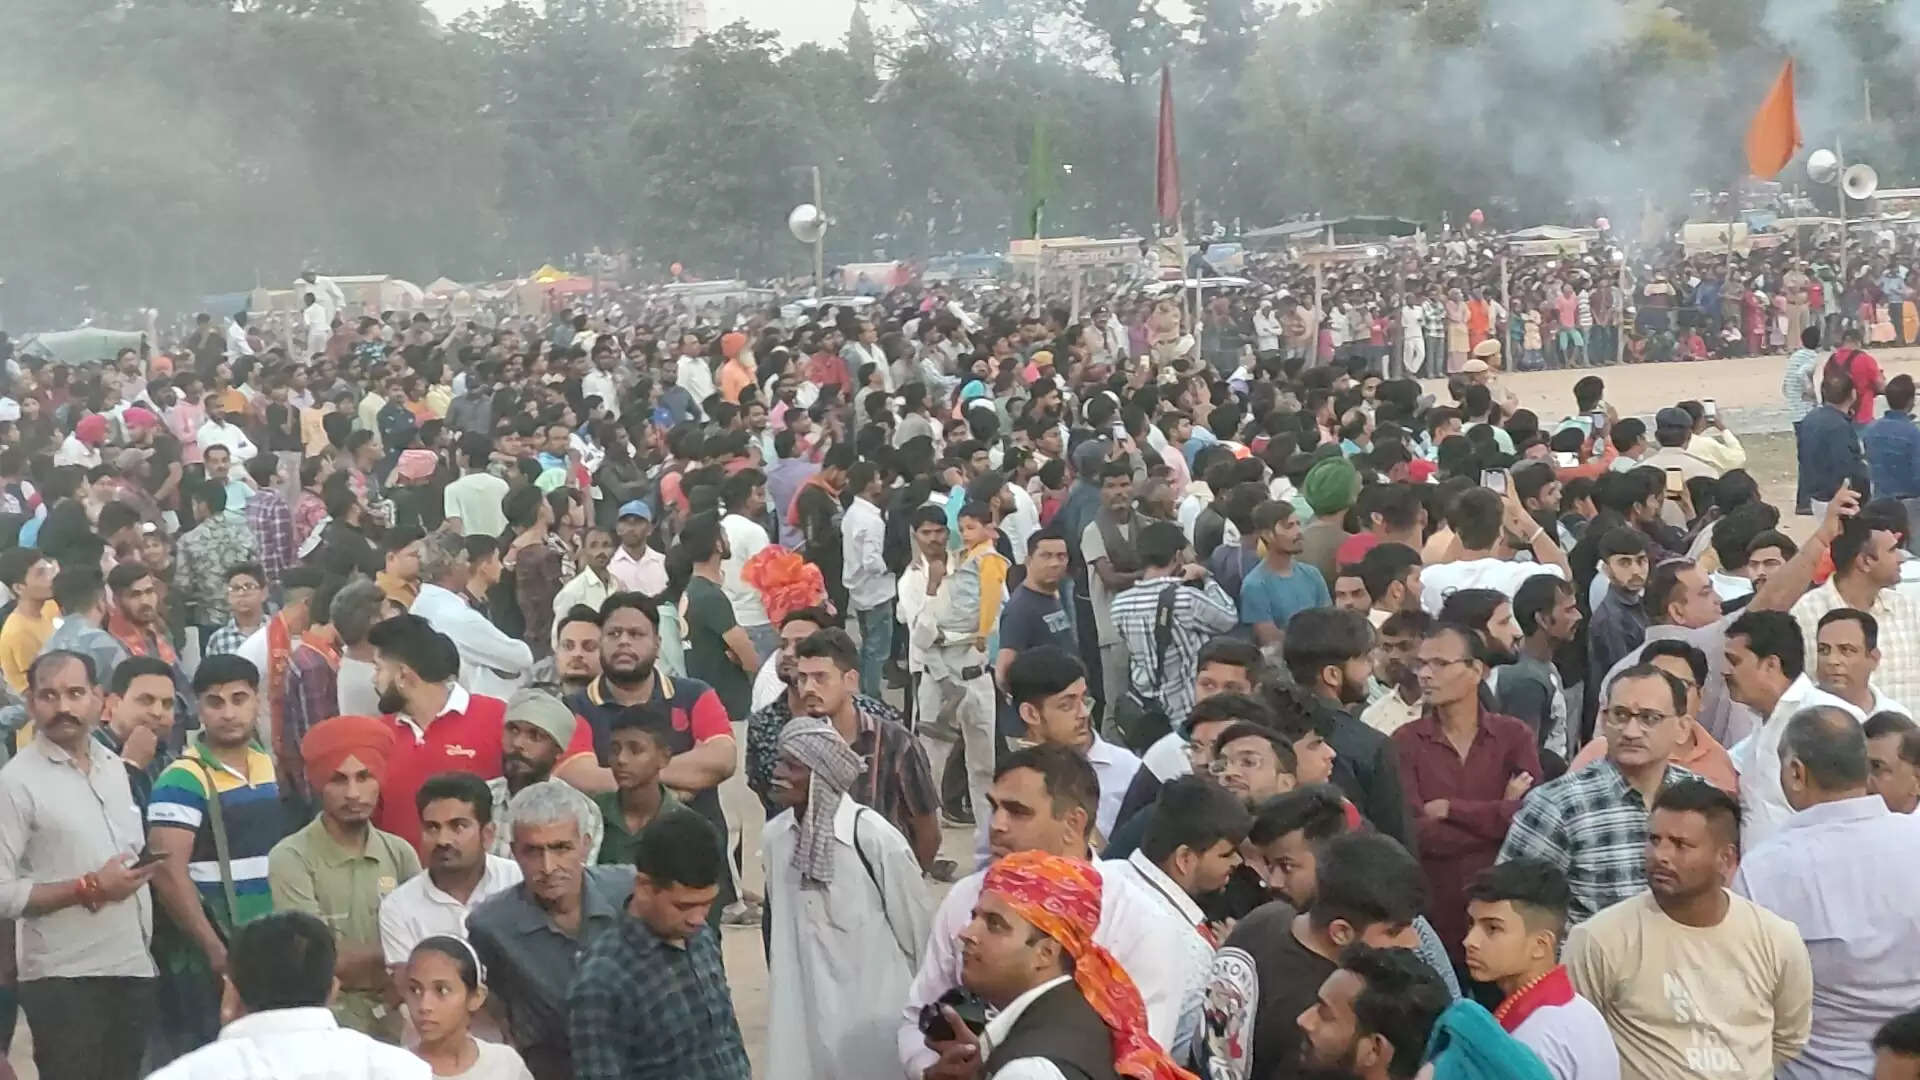 कुरूक्षेत्र दशहरा कमेटी द्वारा आयोजित दशहरा उत्सव में पहुंचे 50 हजार से अधिक लोग